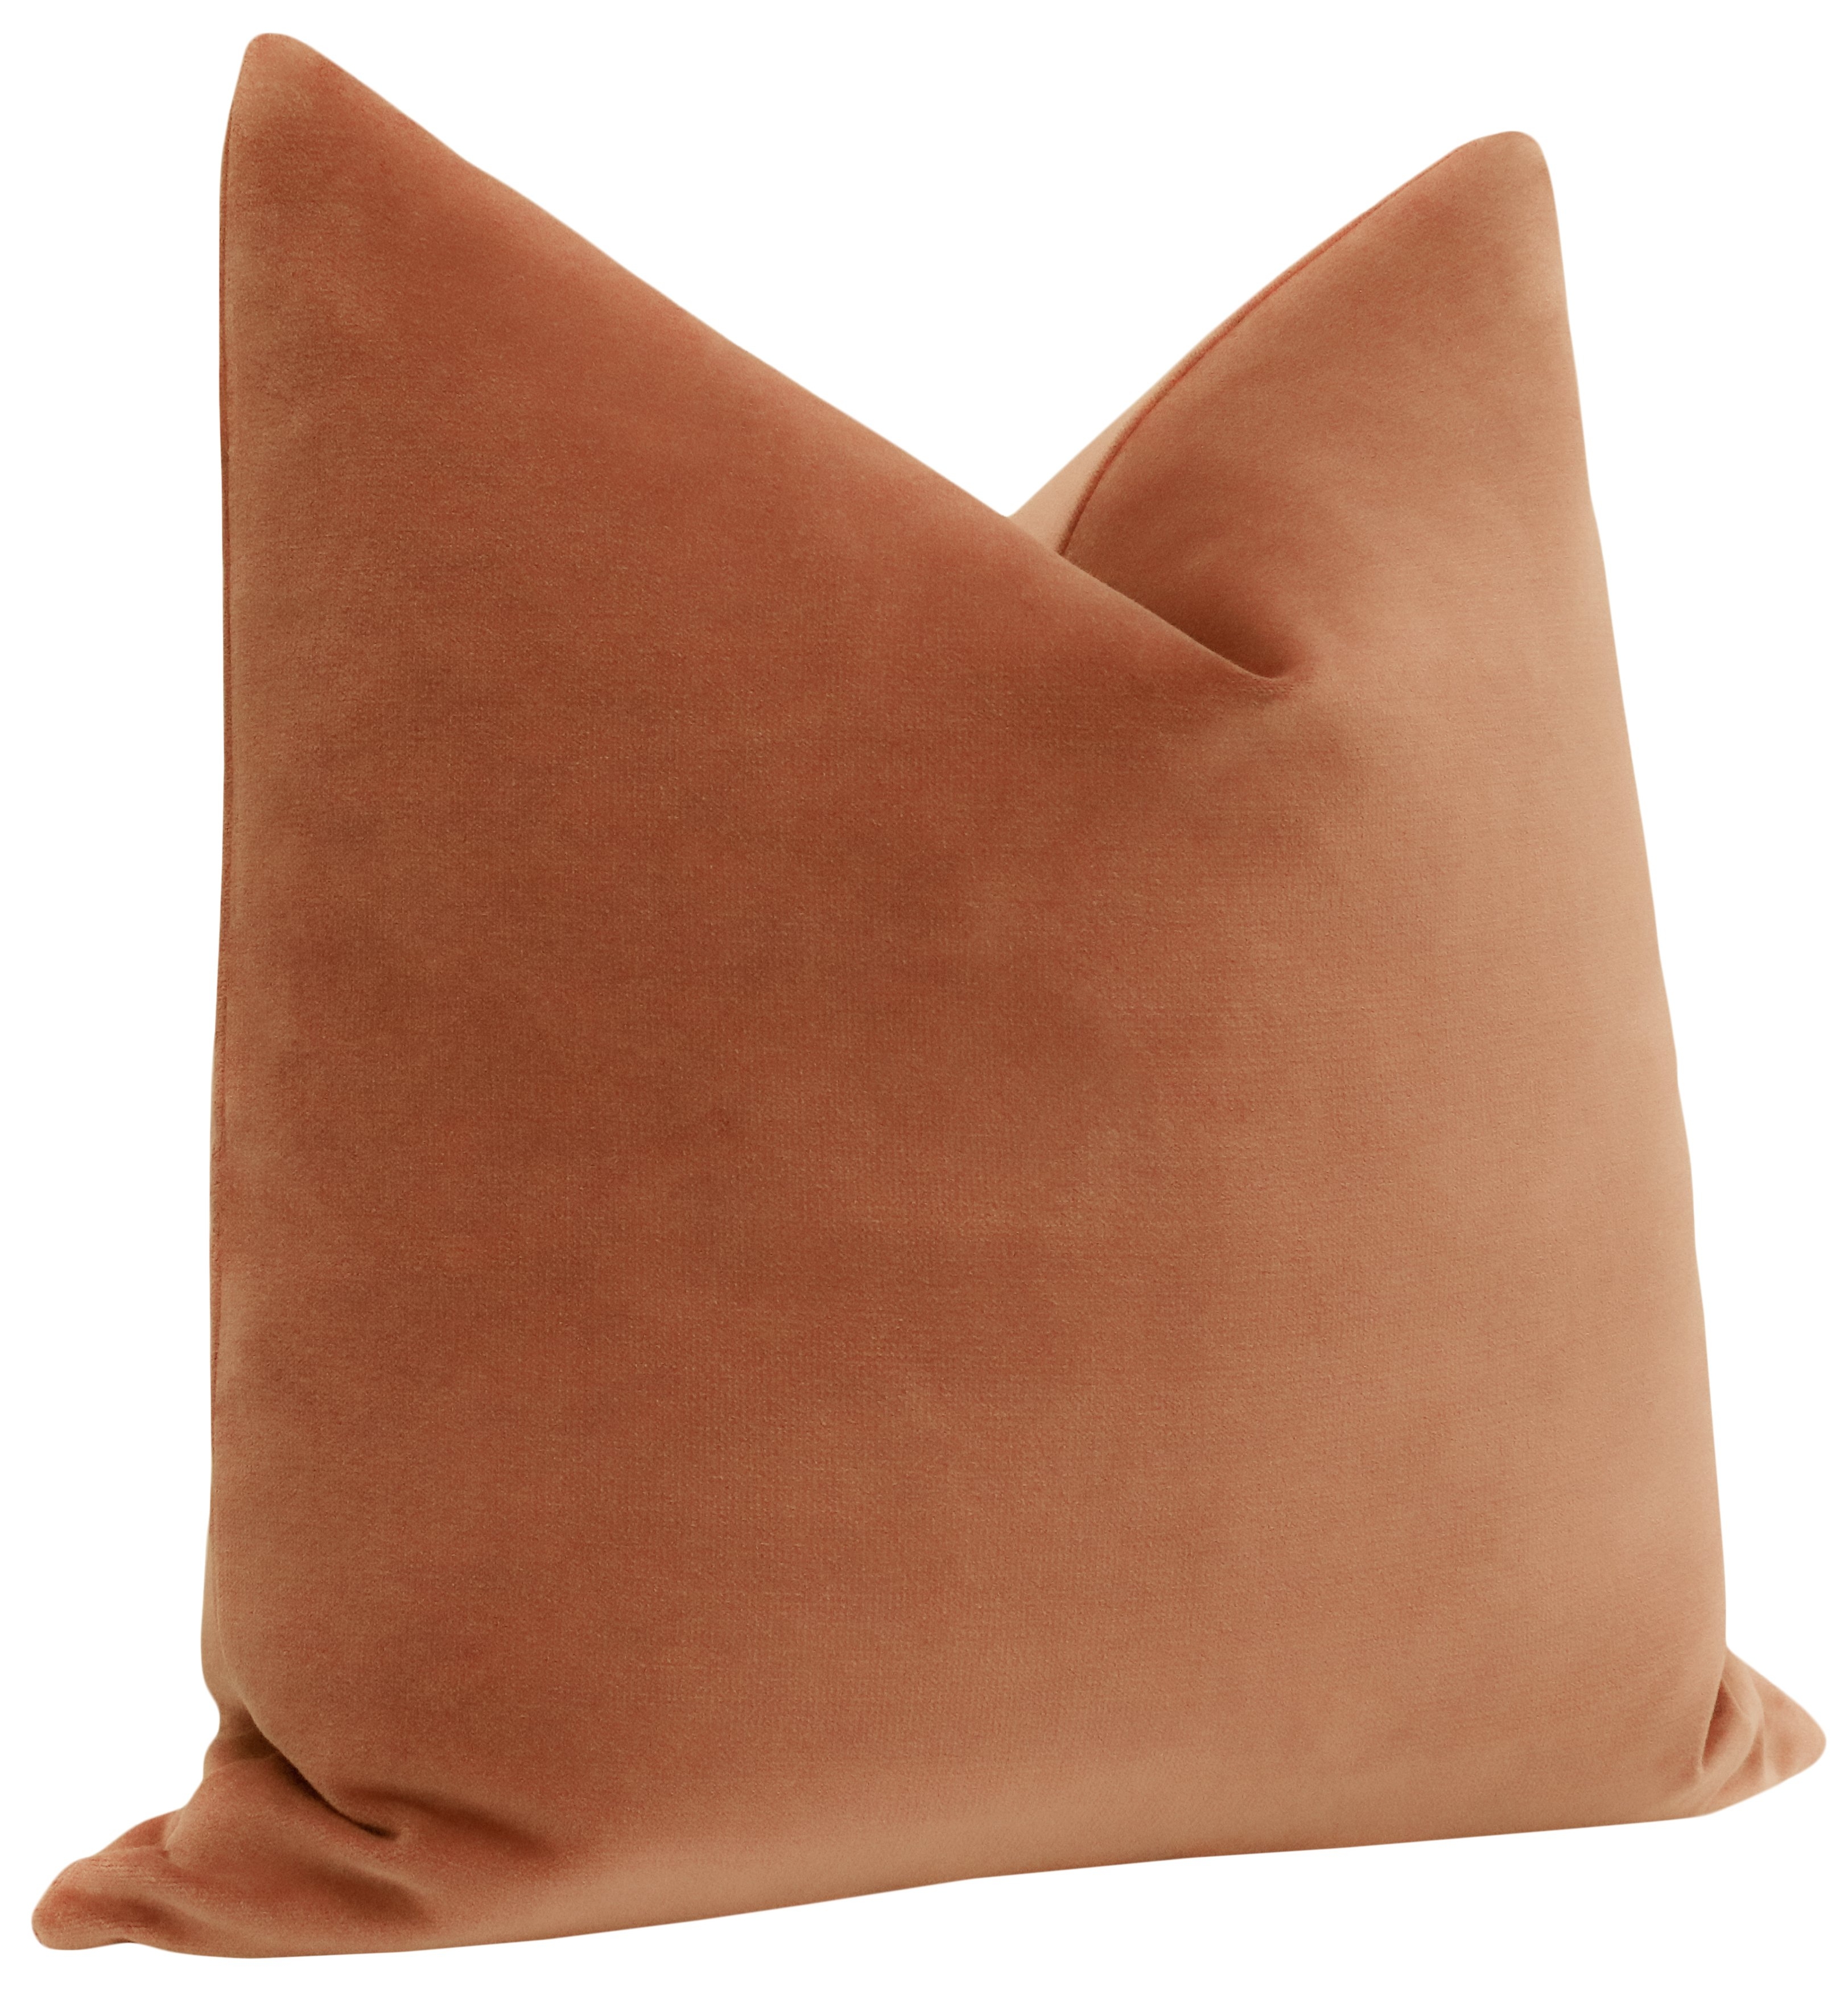 Sonoma Velvet Pillow Cover, Terracotta, 22" x 22" - Image 1